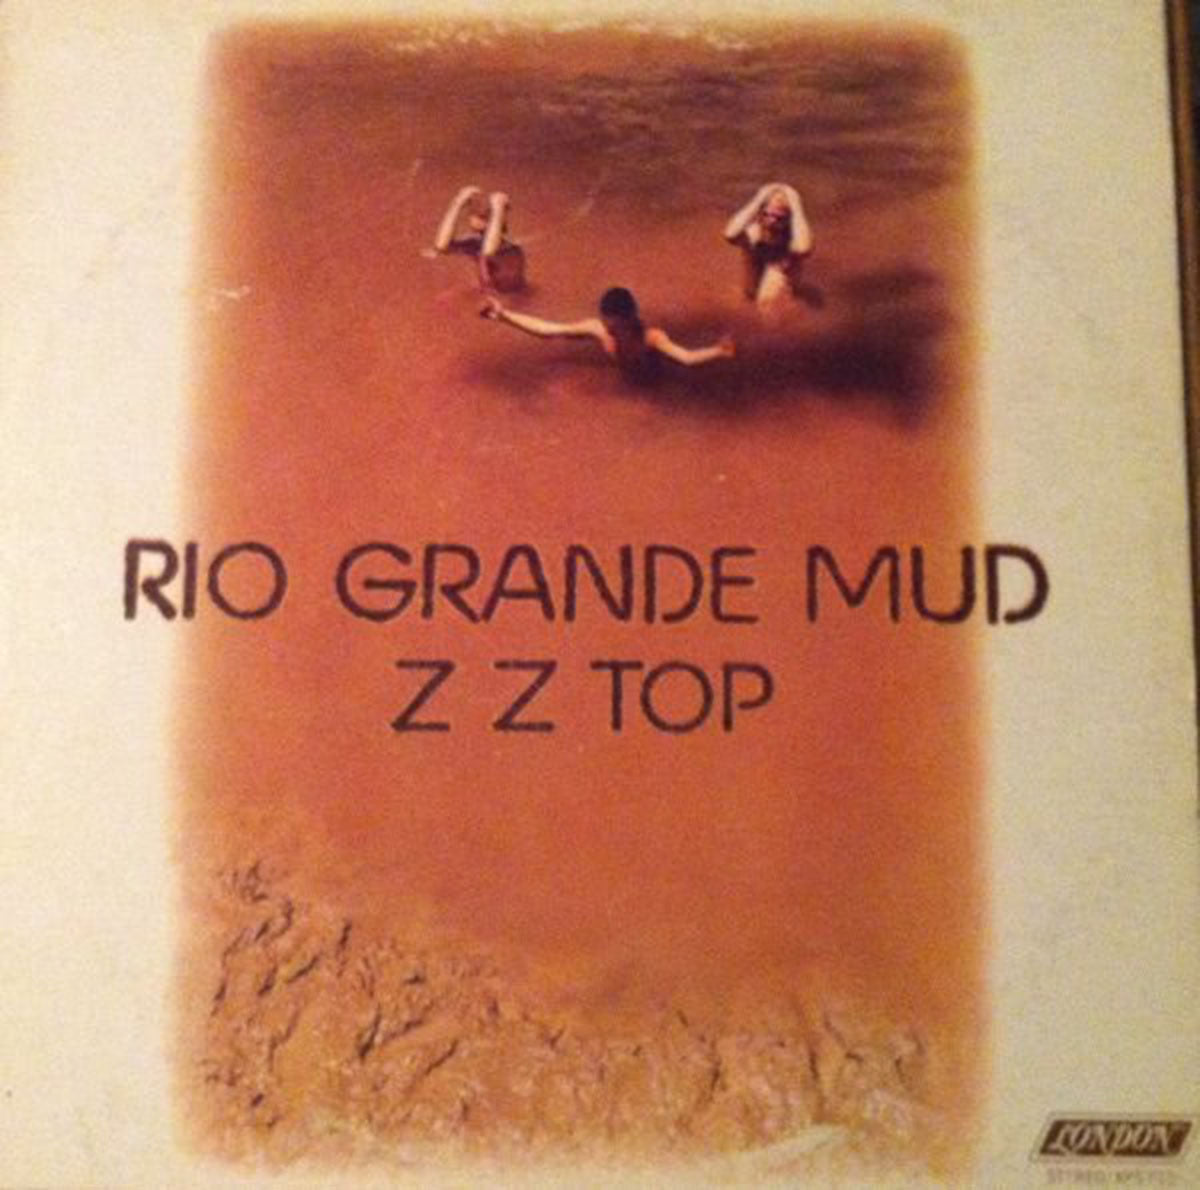 ZZ Top – Rio Grande Mud - 1972 Pressing!